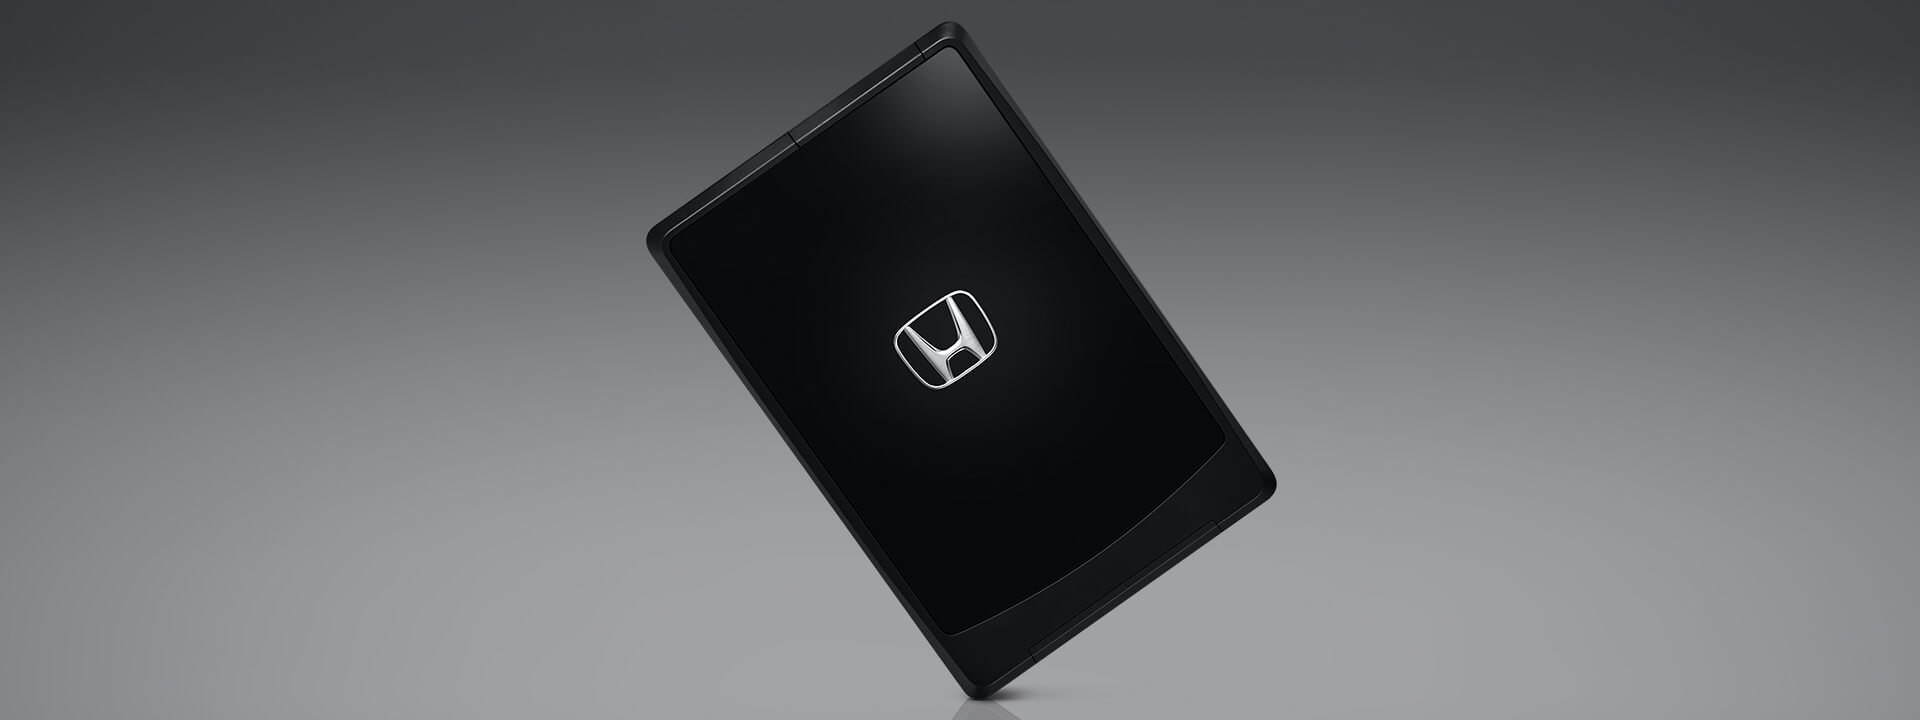 ระบบควบคุมประตูแบบอัจฉริยะพร้อม Honda Smart Key Card